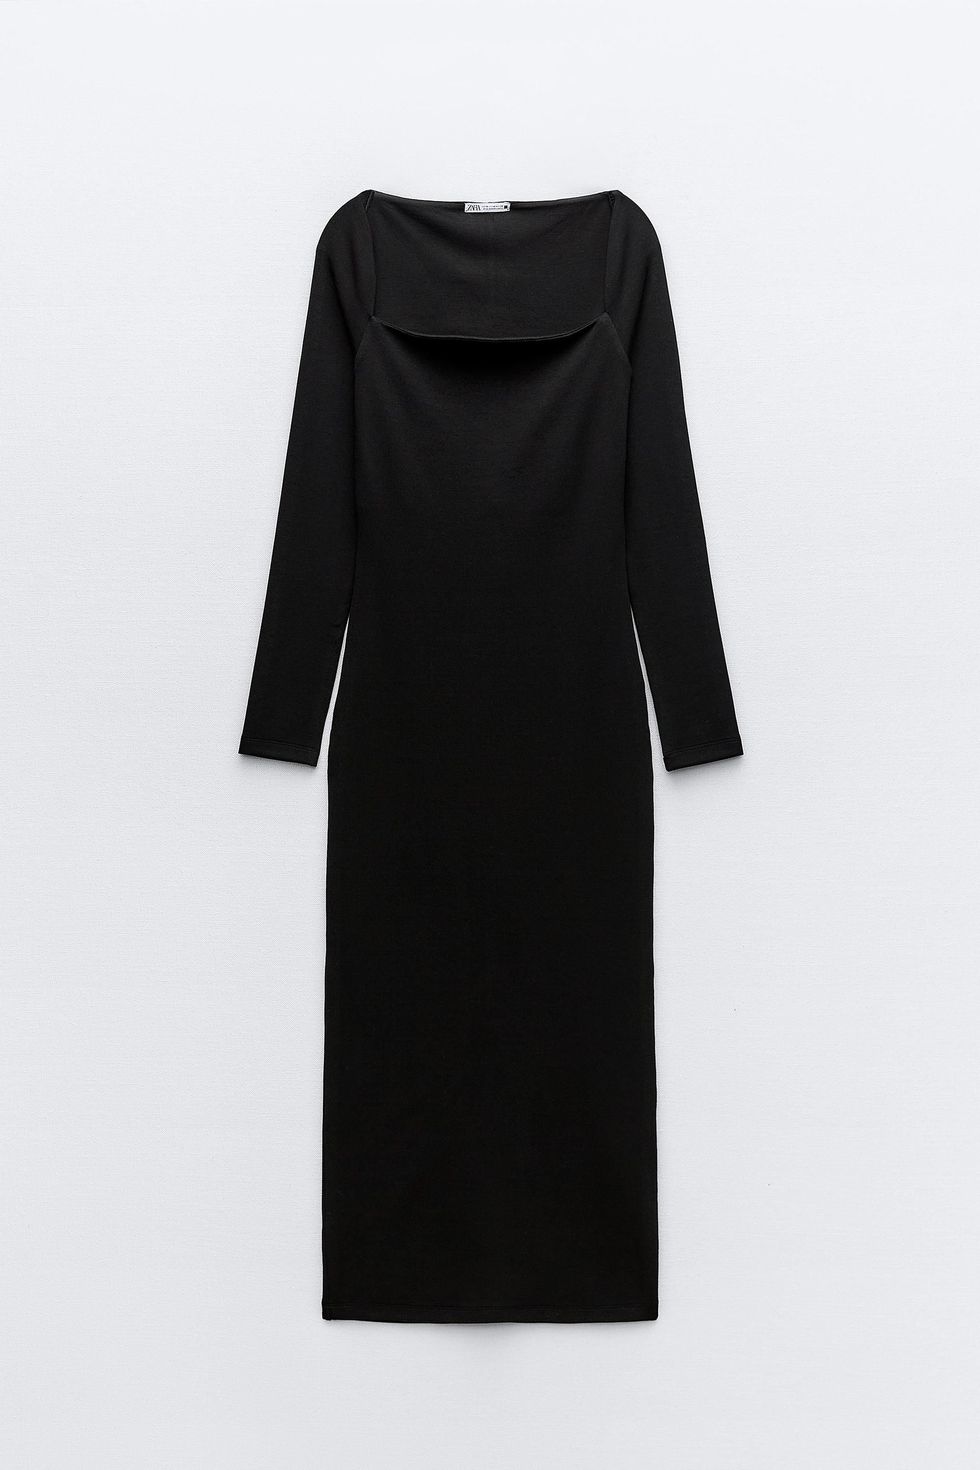 Vestito nero attillato con scollo quadrato, Zara